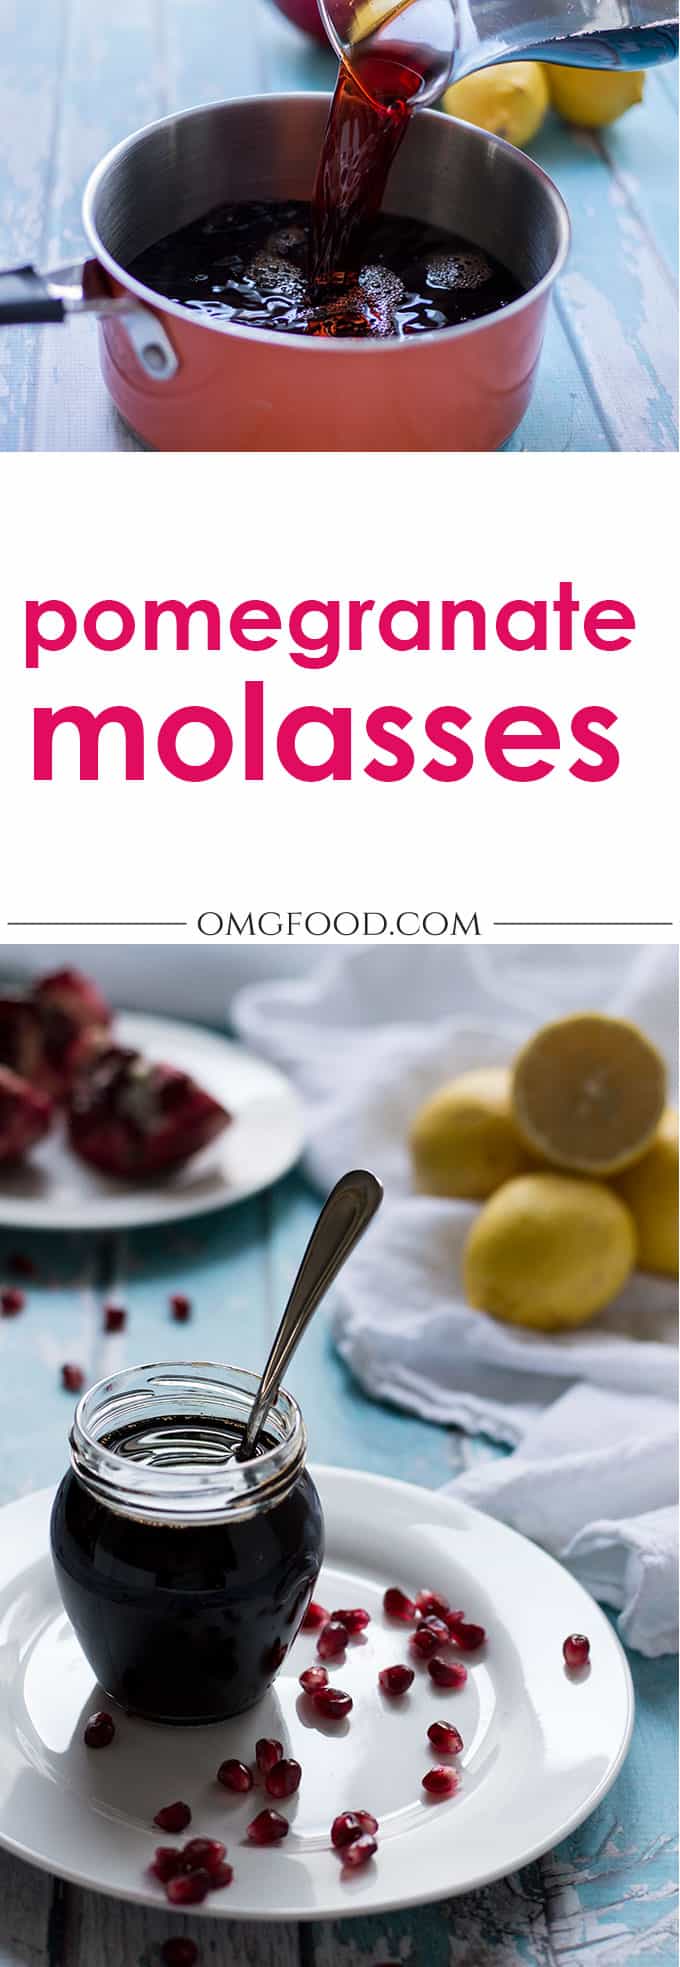 Pinterest banner for pomegranate molasses.